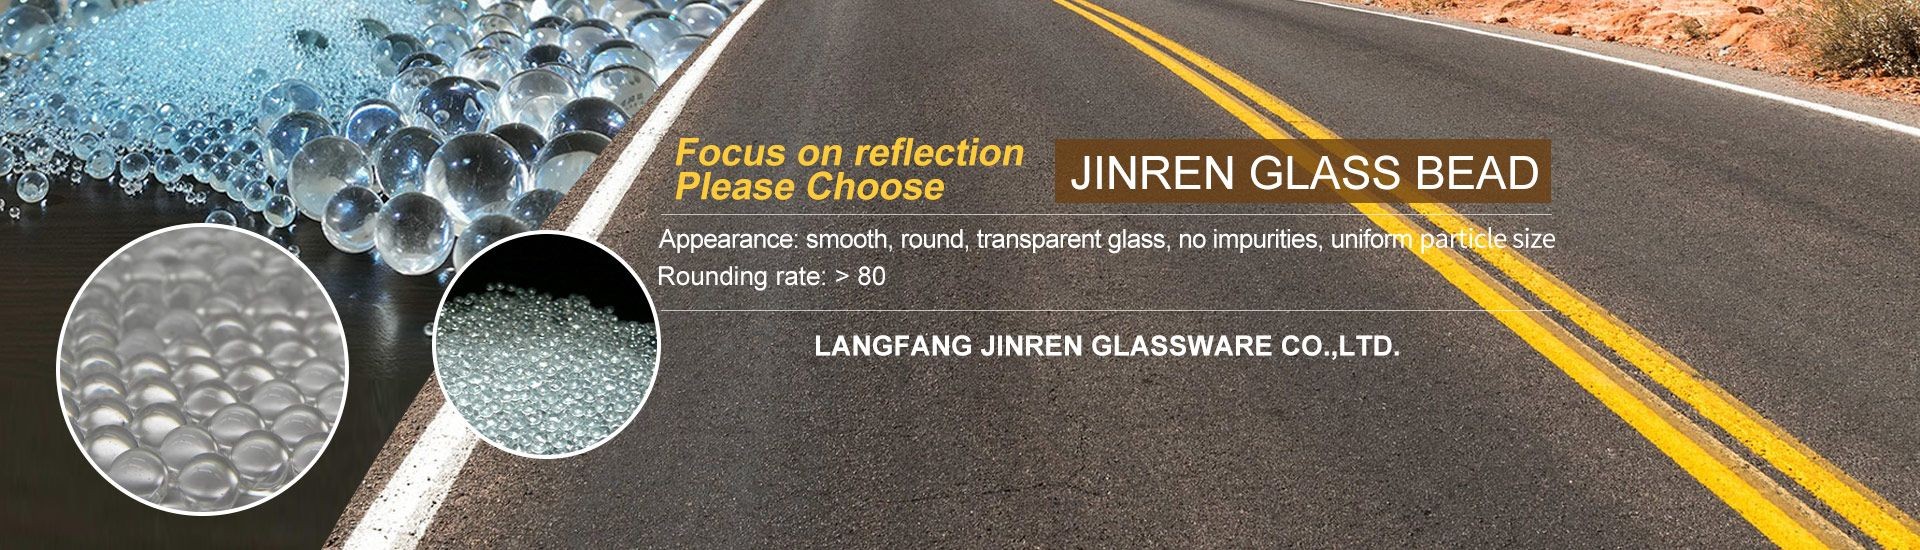 Langfang Jinren Glass Beads, Co., Ltd